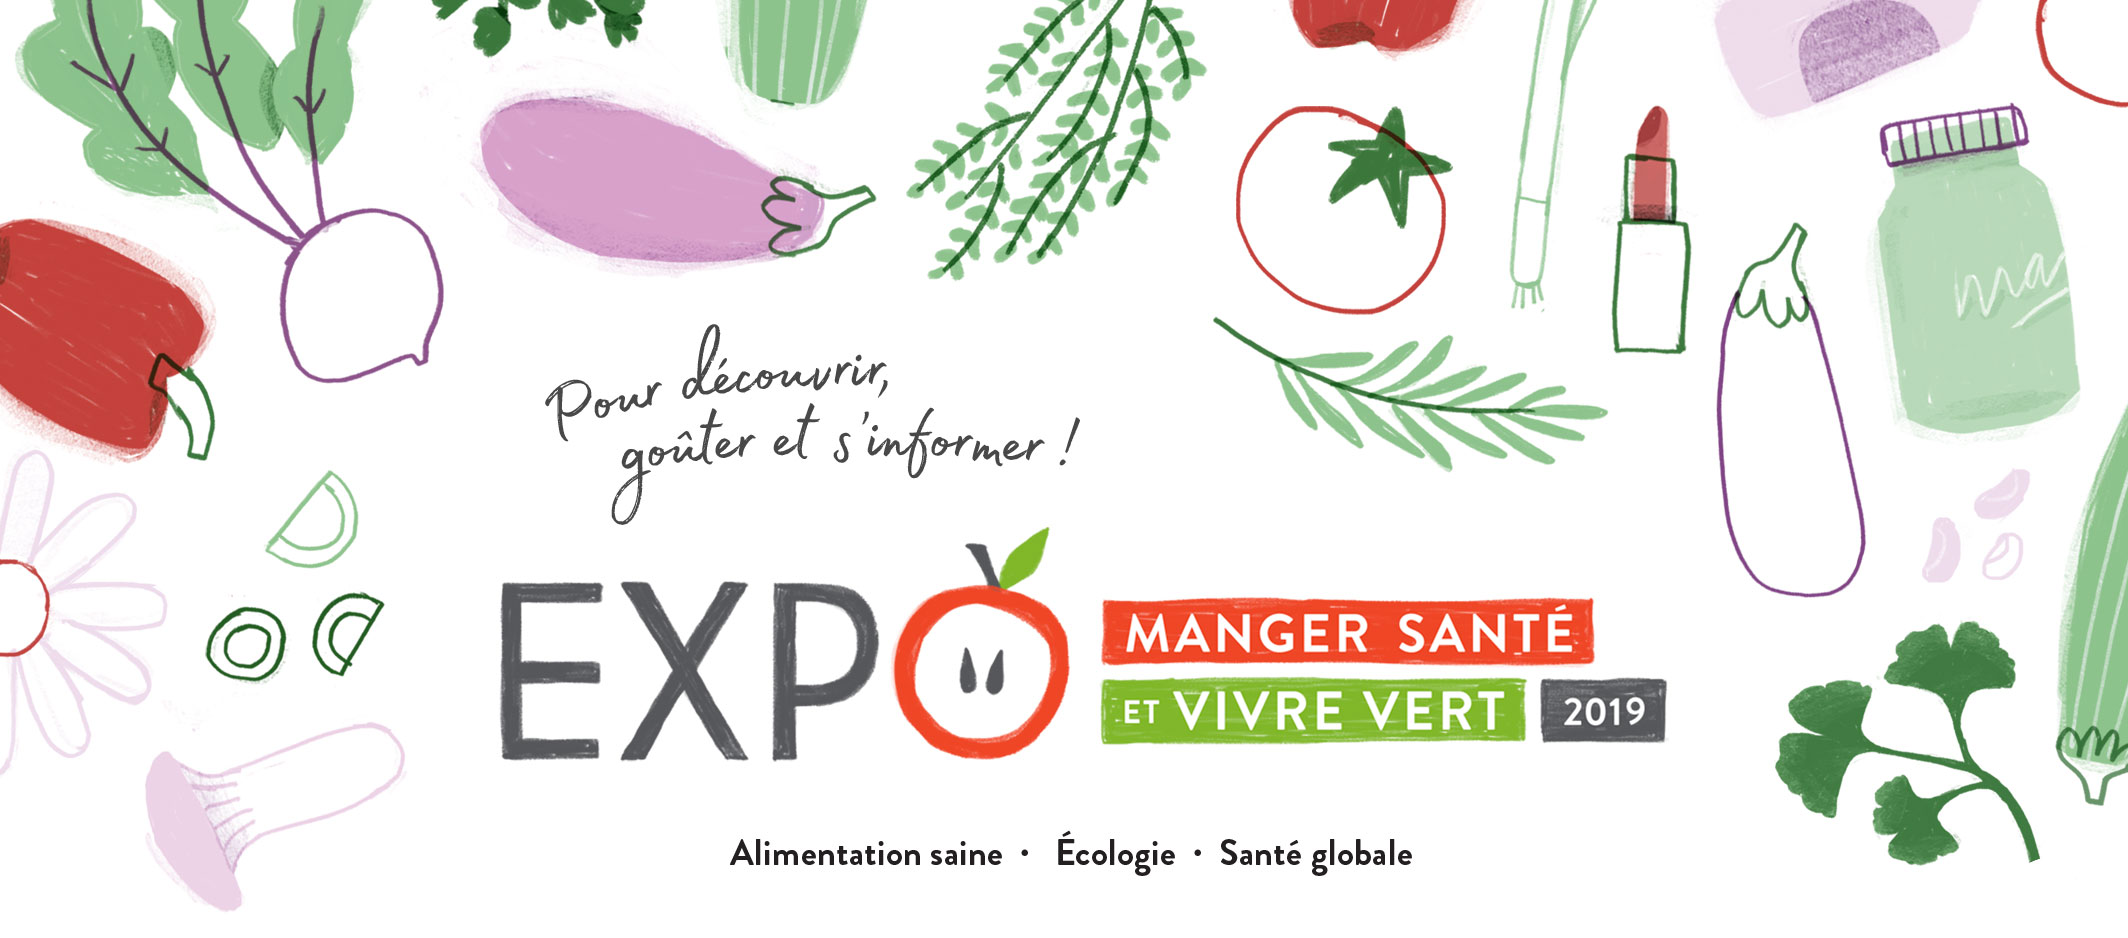 Expo manger santé et vivre vert 2019 Renée Frappier